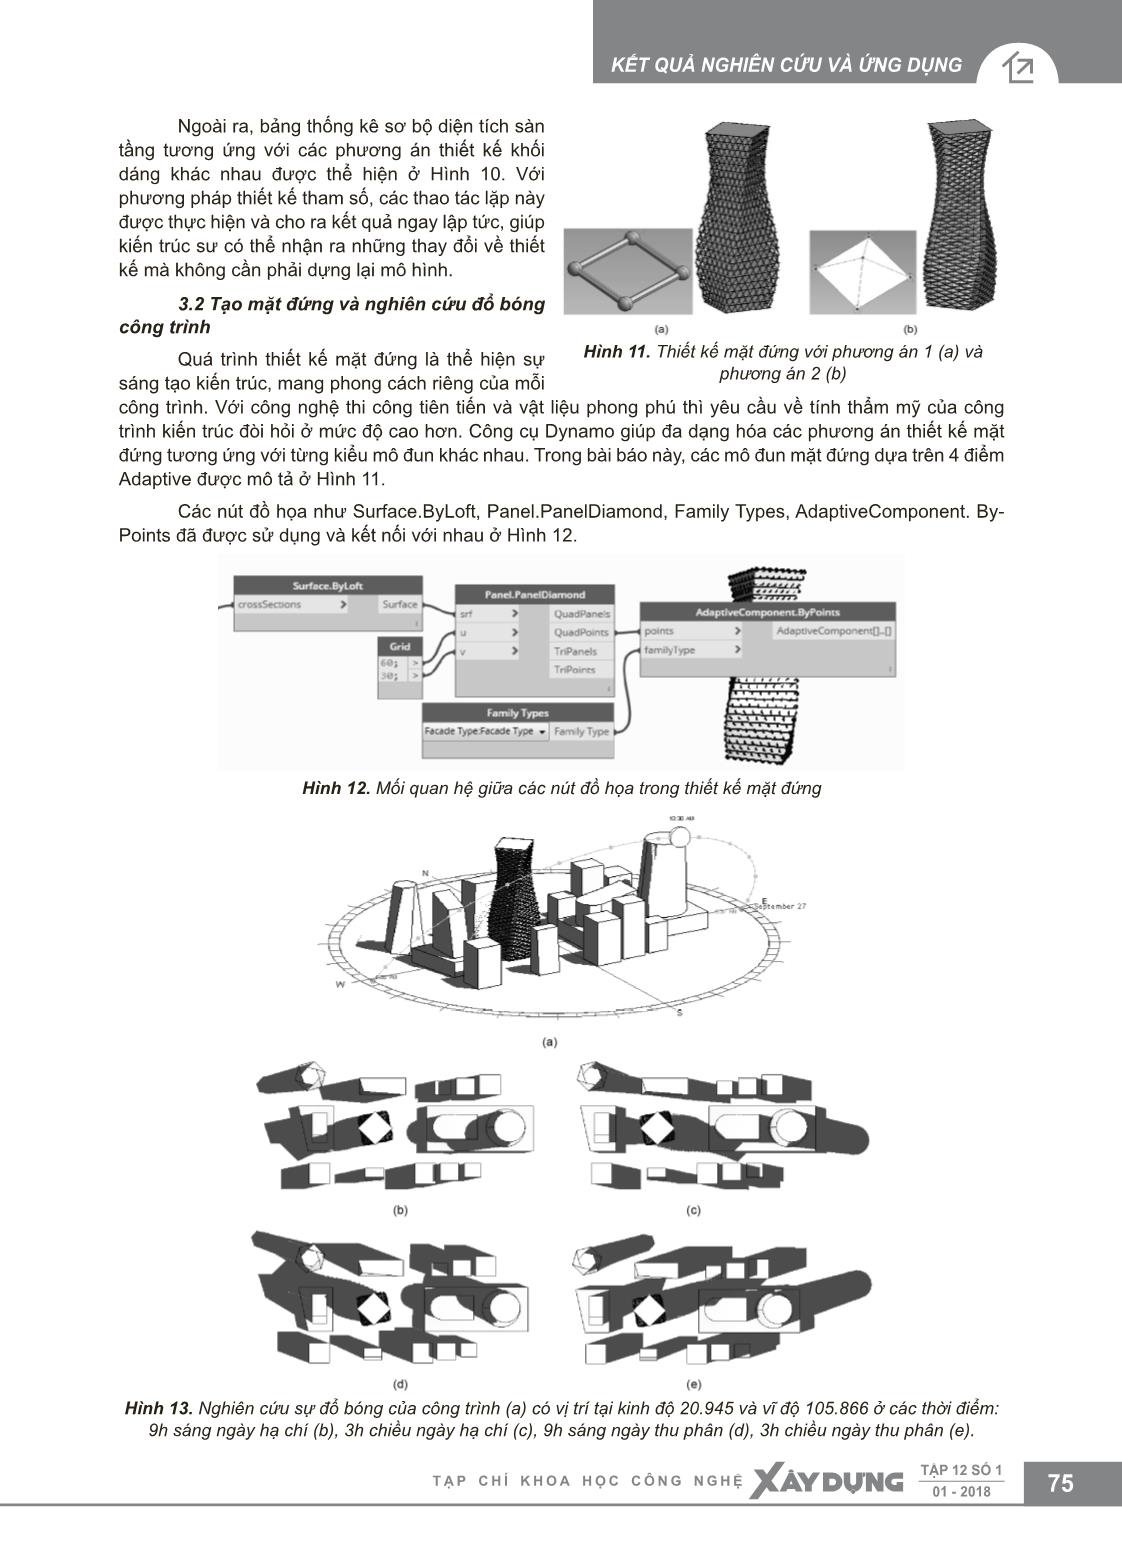 Ứng dụng Dynamo cho dự án BIM trong giai đoạn thiết kế ý tưởng trang 5